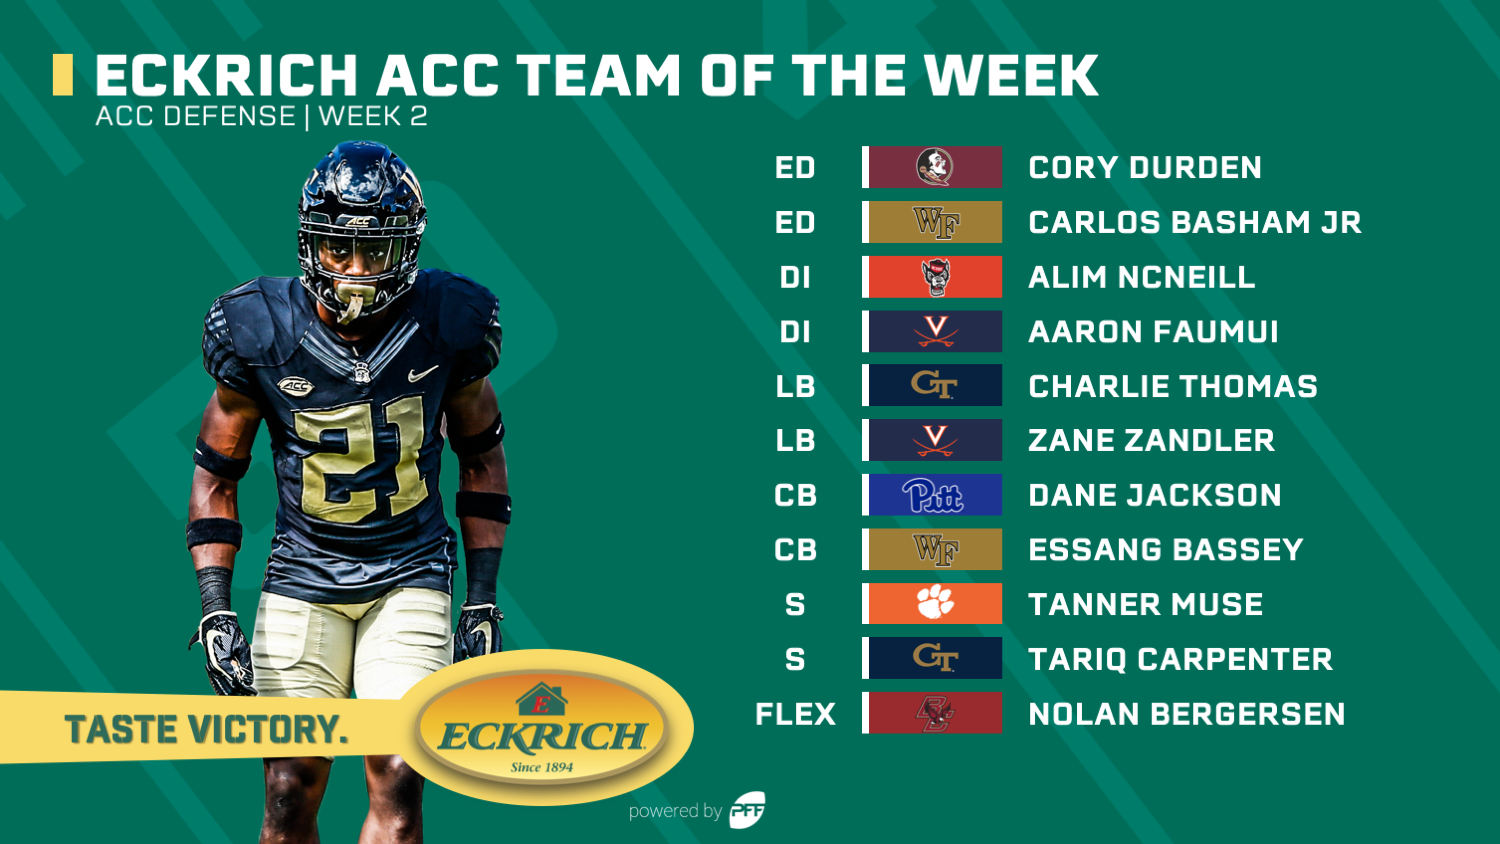 College Football Week 2 Eckrich Team of the Week, NFL Draft